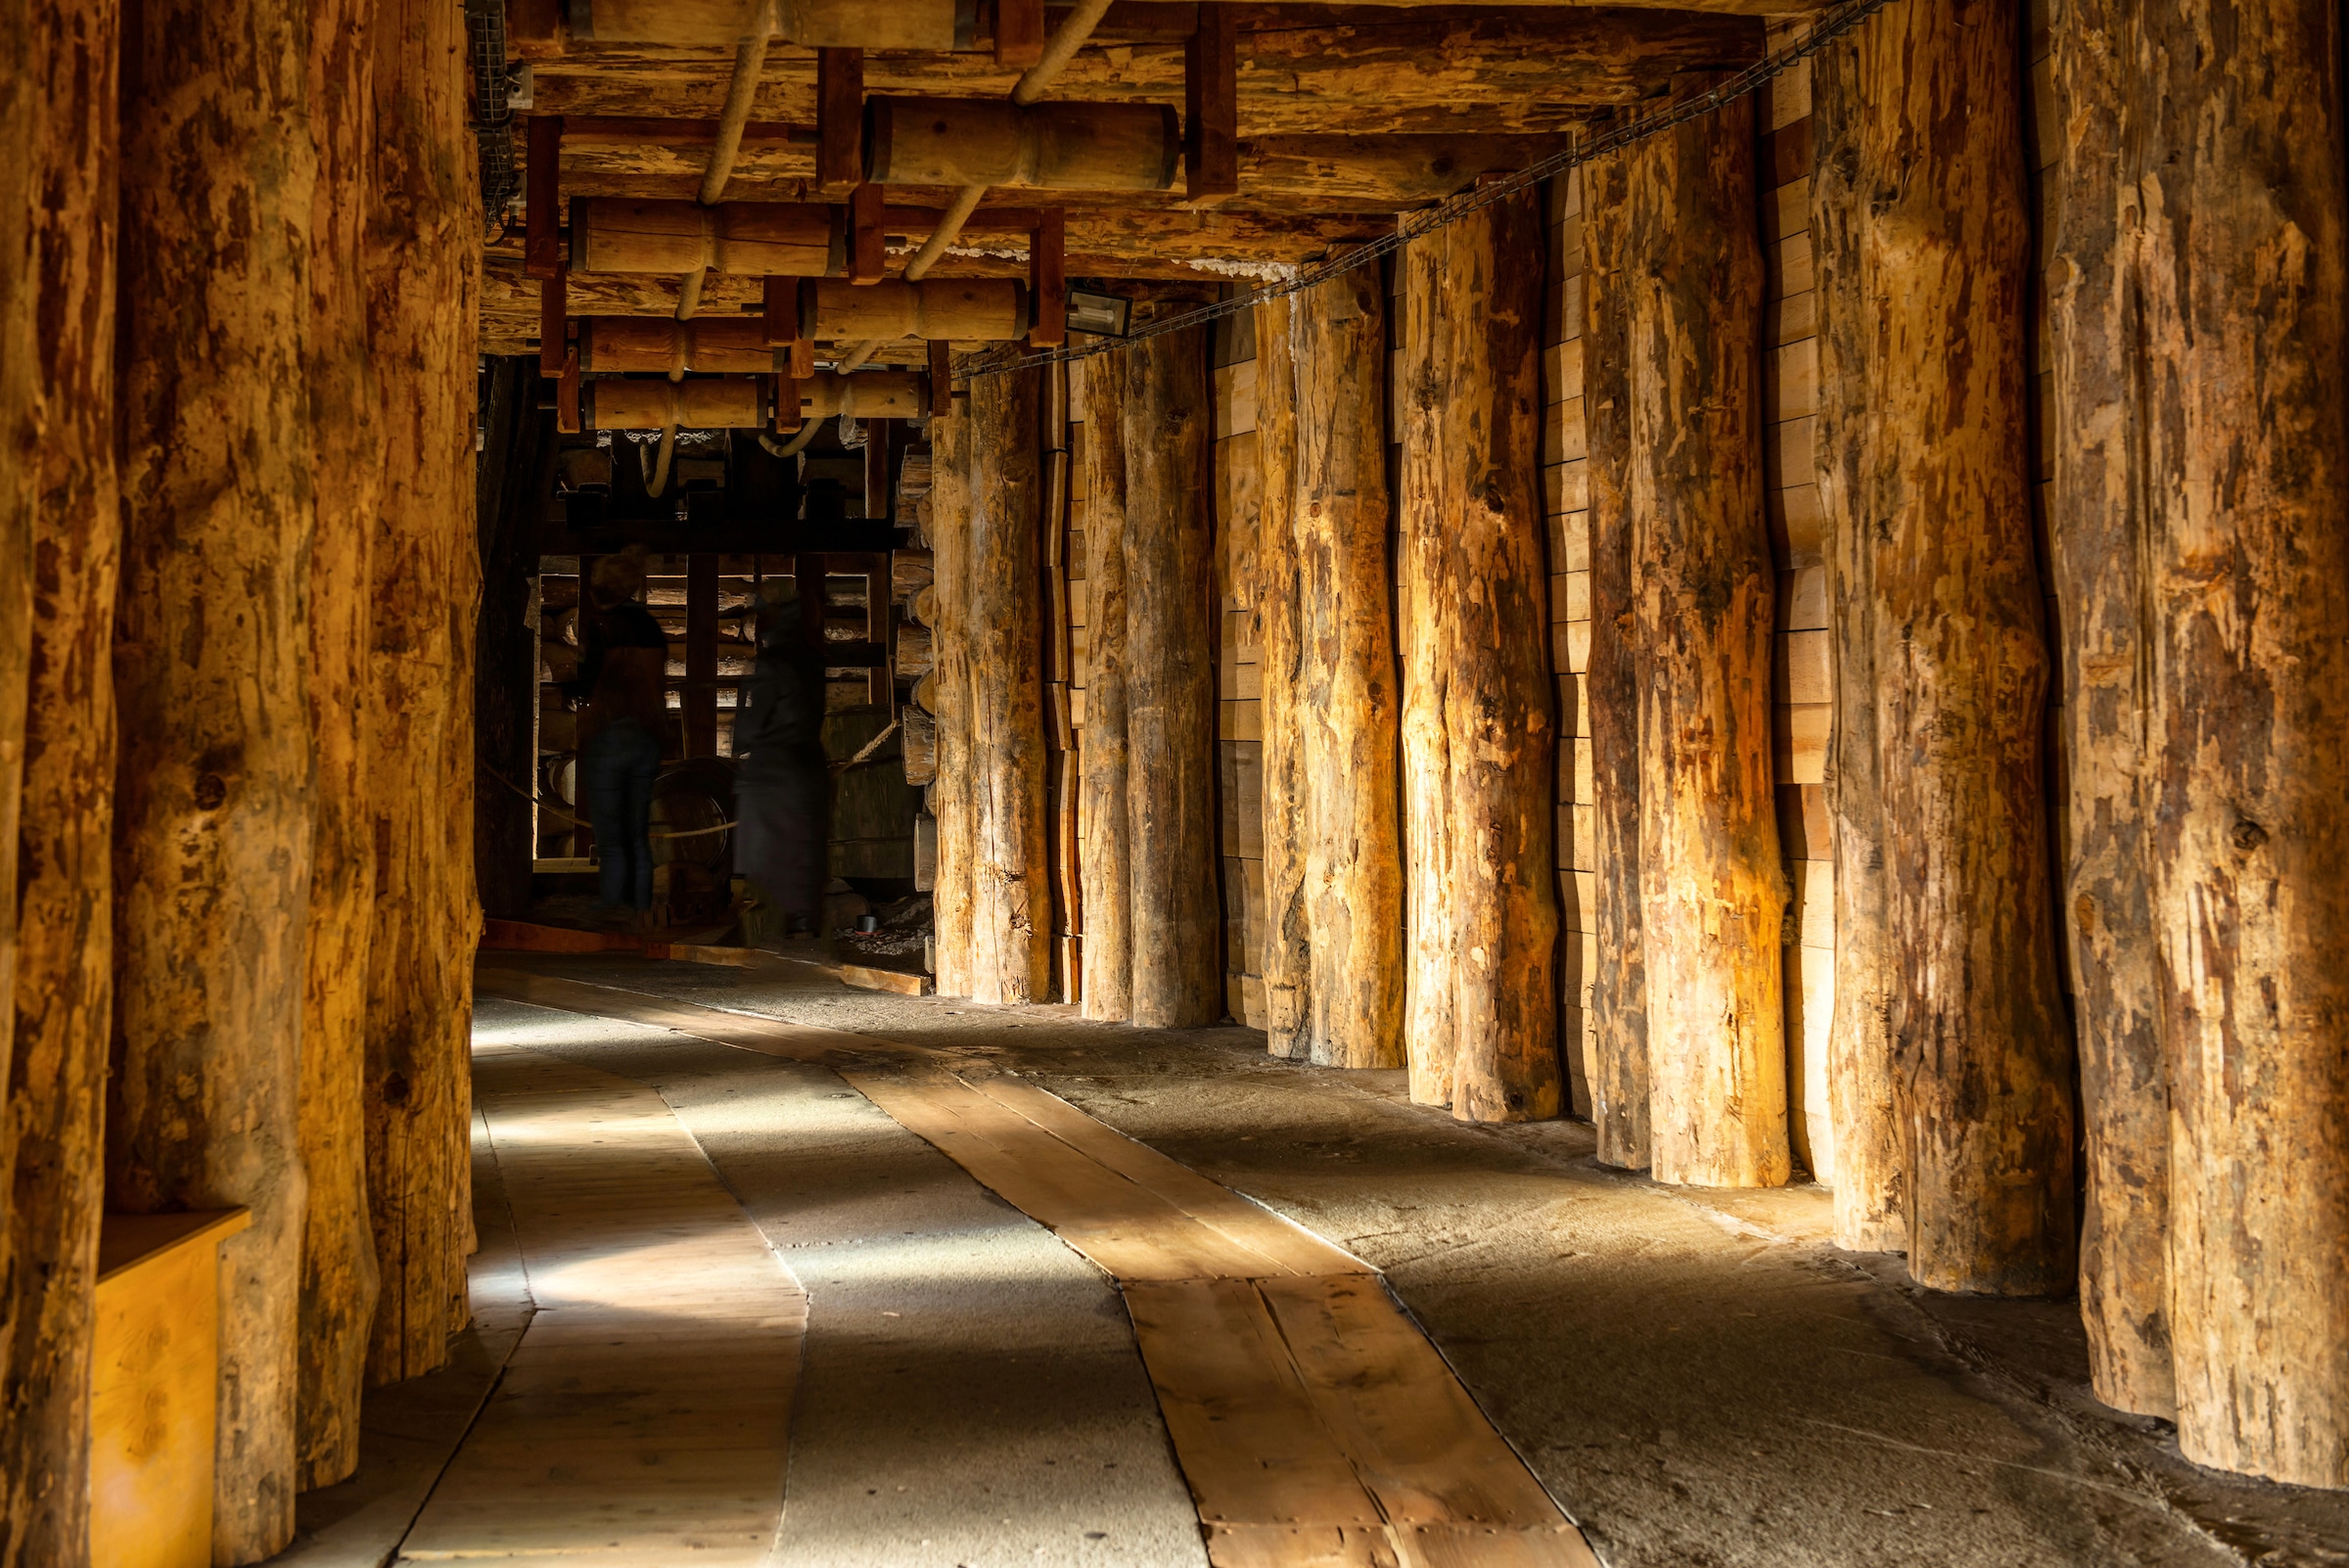 Fototapete »Wieliczka Salt Mine«